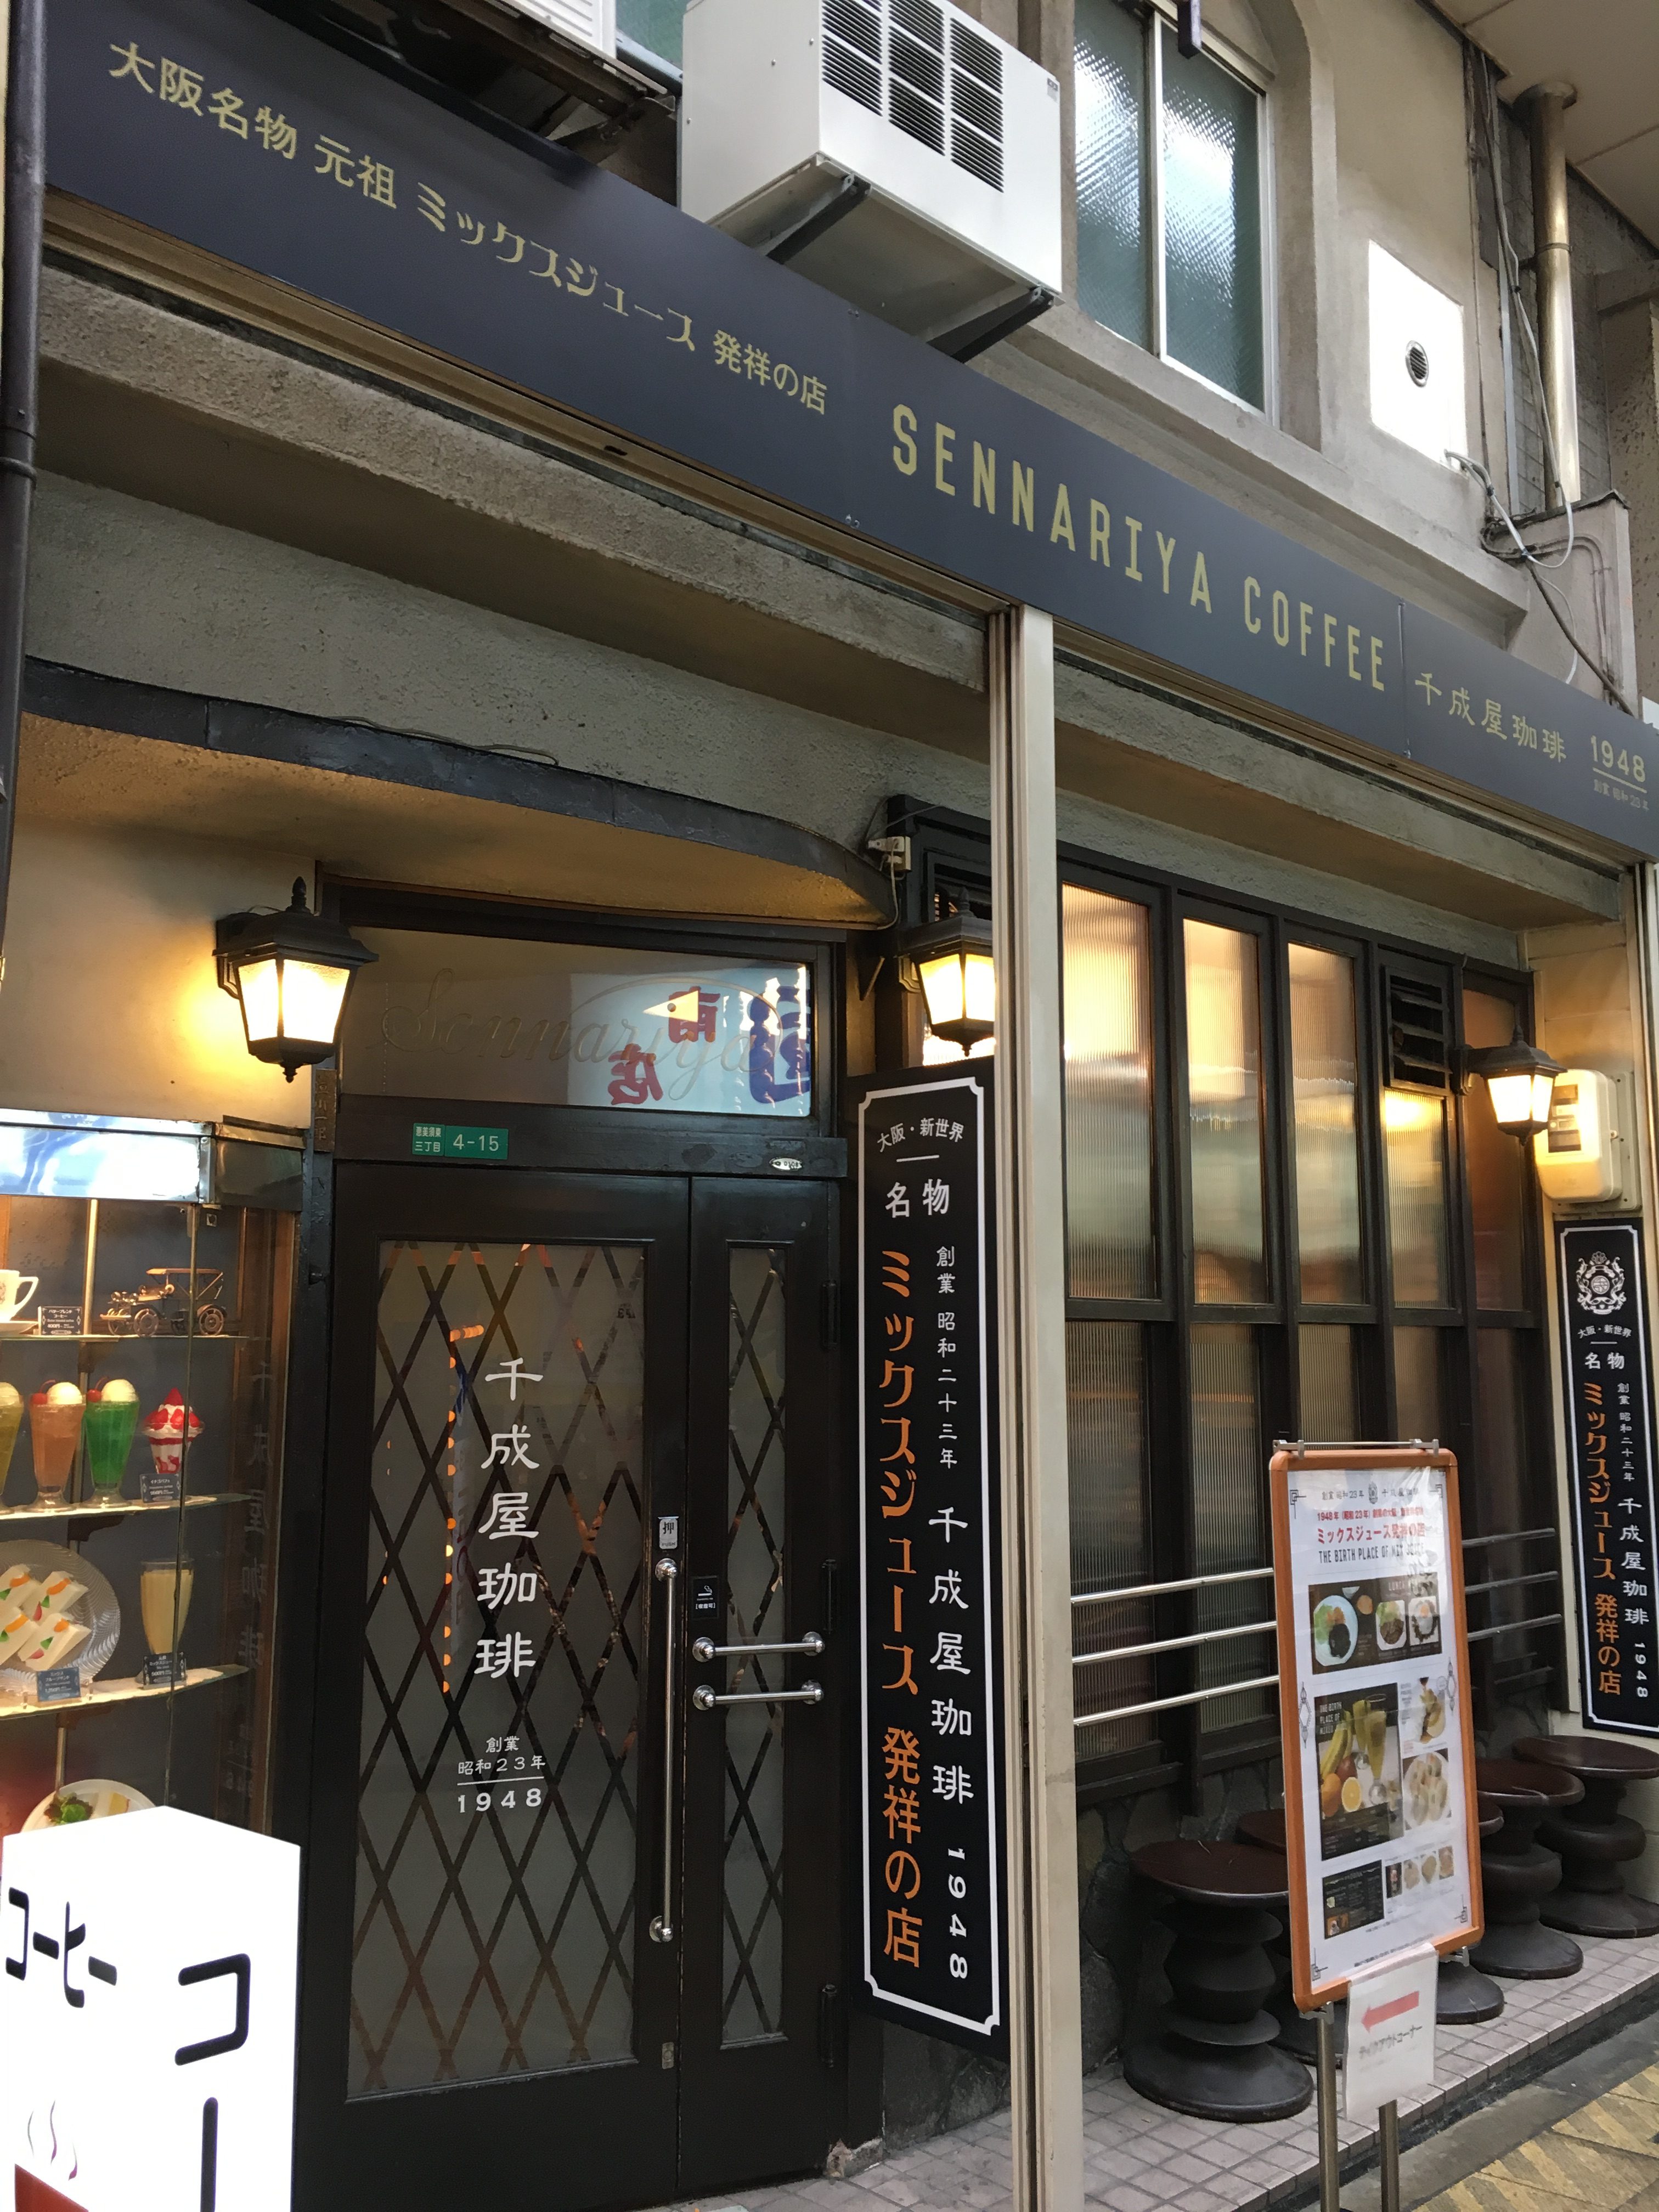 Sennariya Coffee in Osaka Shinsekai